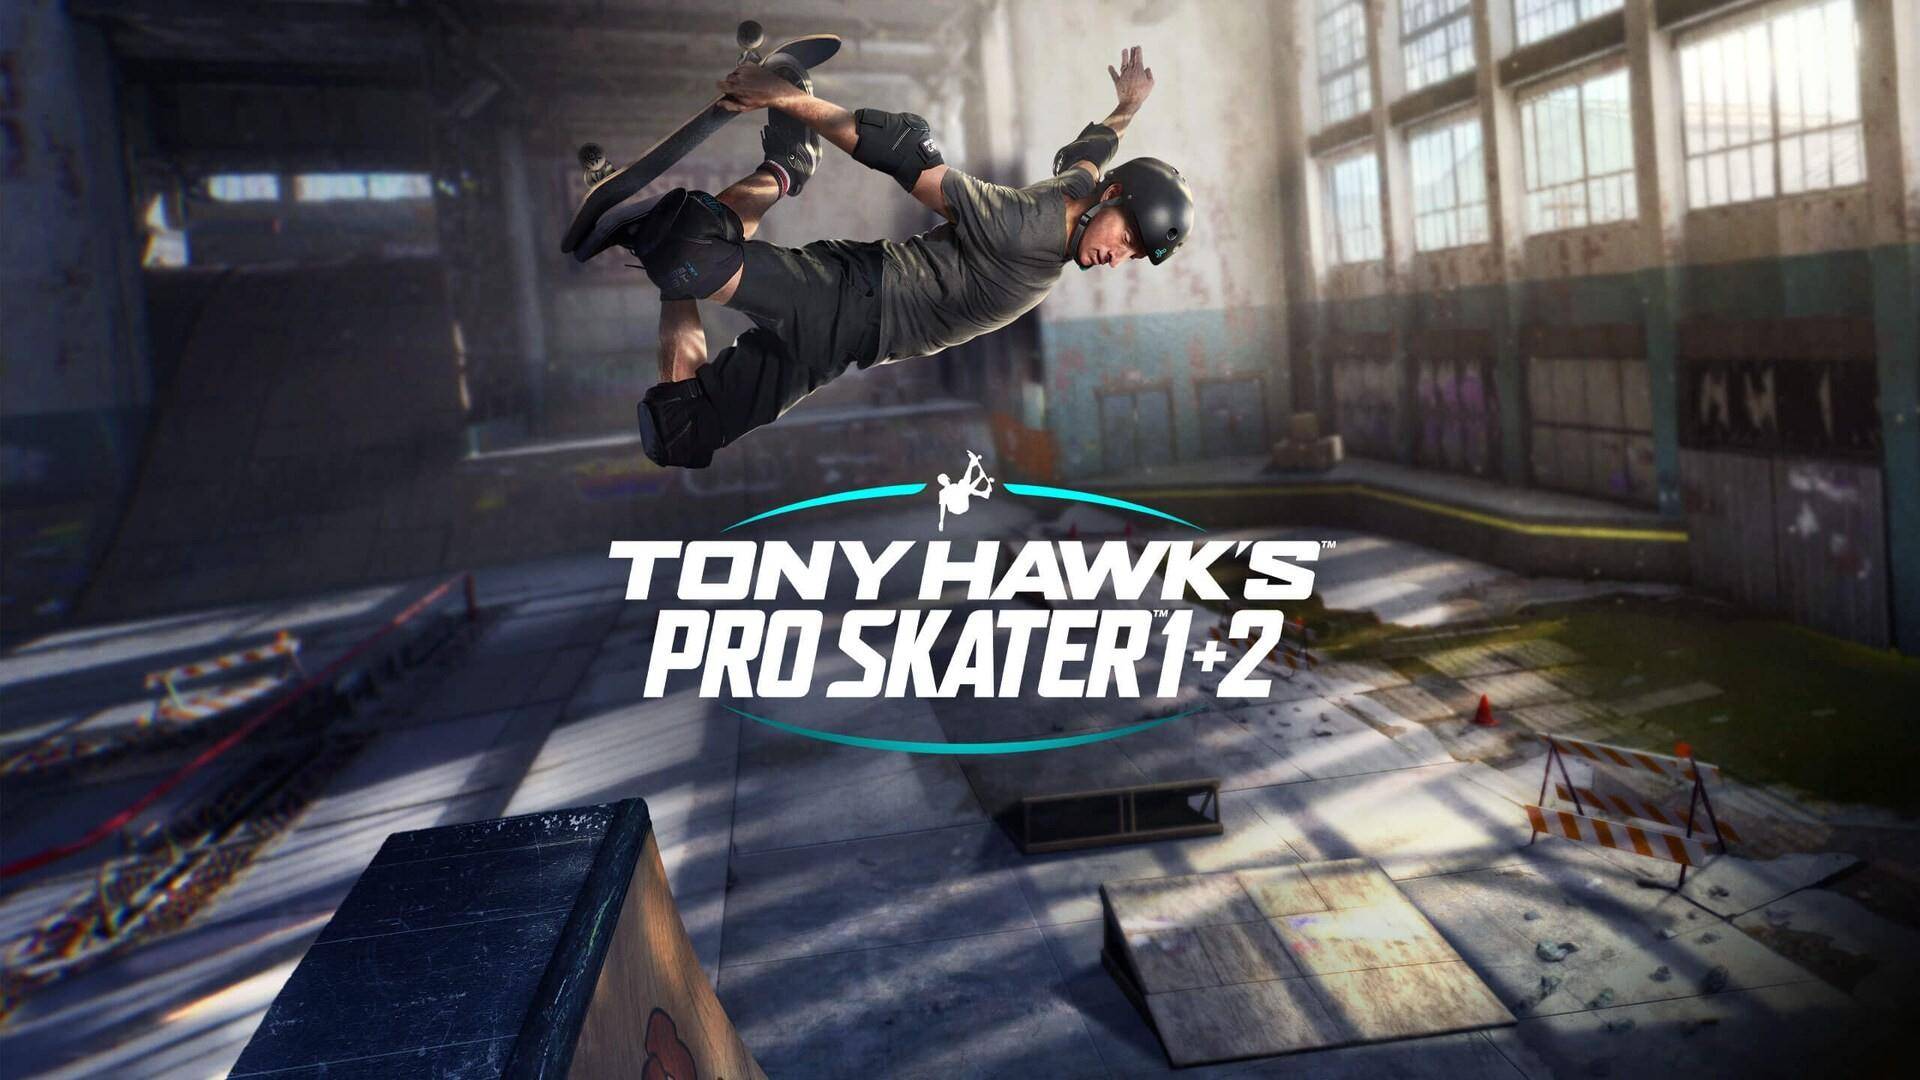 Dostępna jest bezpłatna wersja próbna Tony Hawk’s Pro Skater 1 + 2